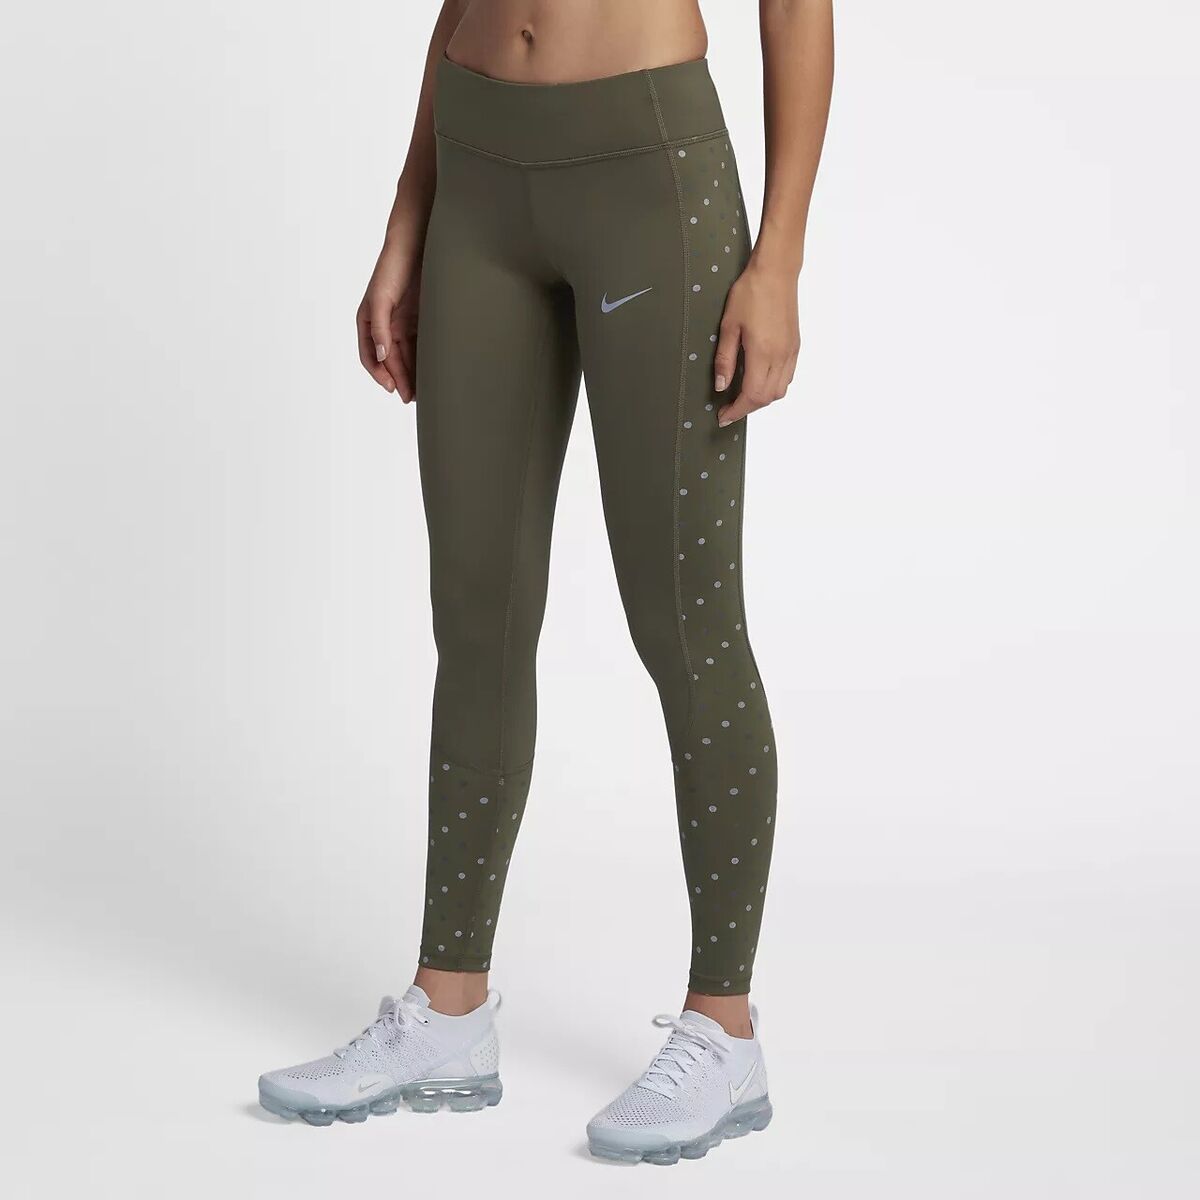 Nike Womens Racer Flash Running Tight Leggings 930383-355 Olive